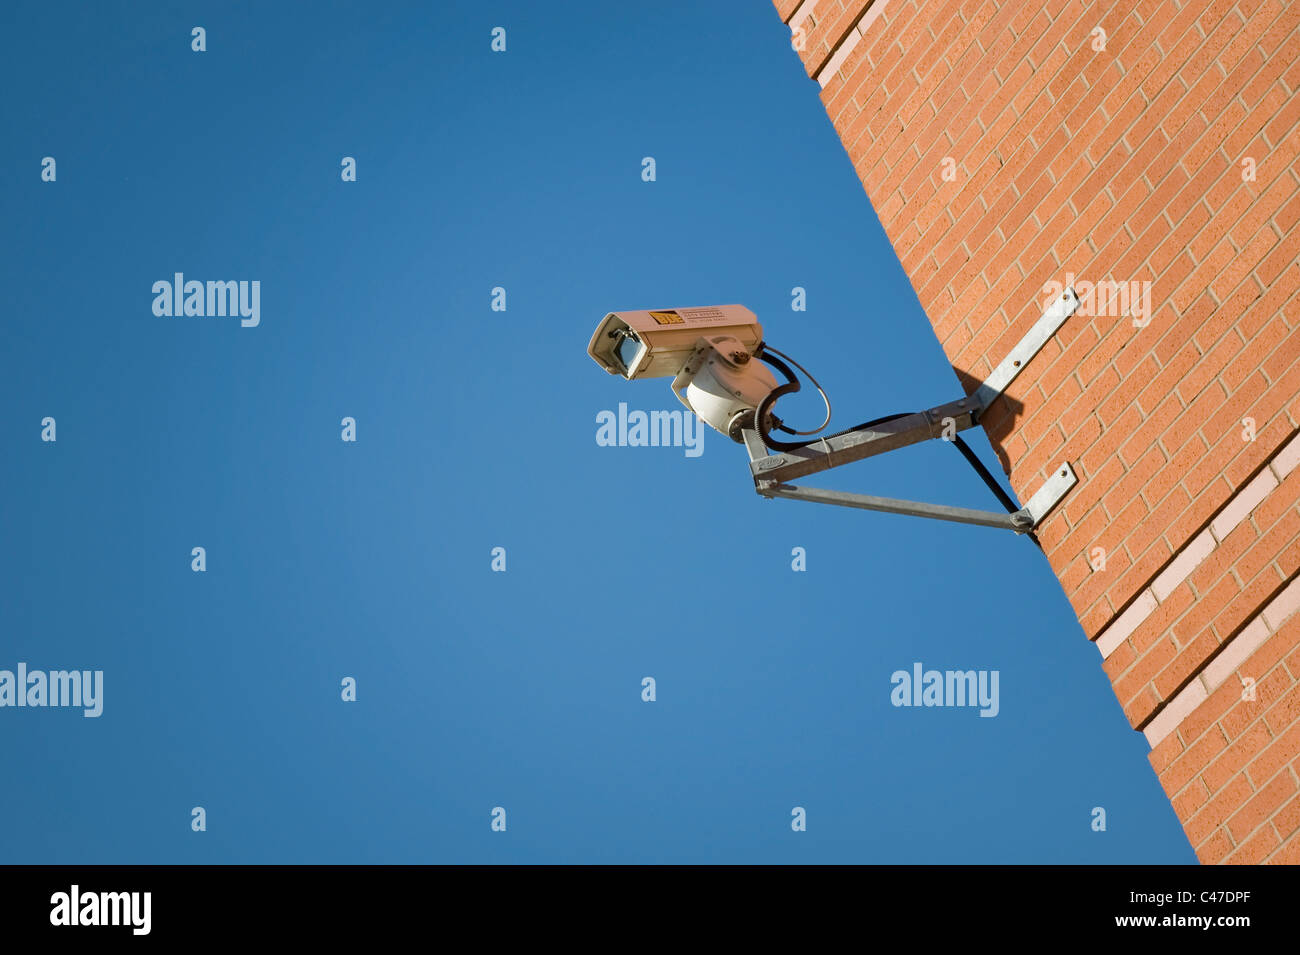 Une caméra de surveillance reliée à un mur de brique sur un ciel clair et lumineux 24. Banque D'Images